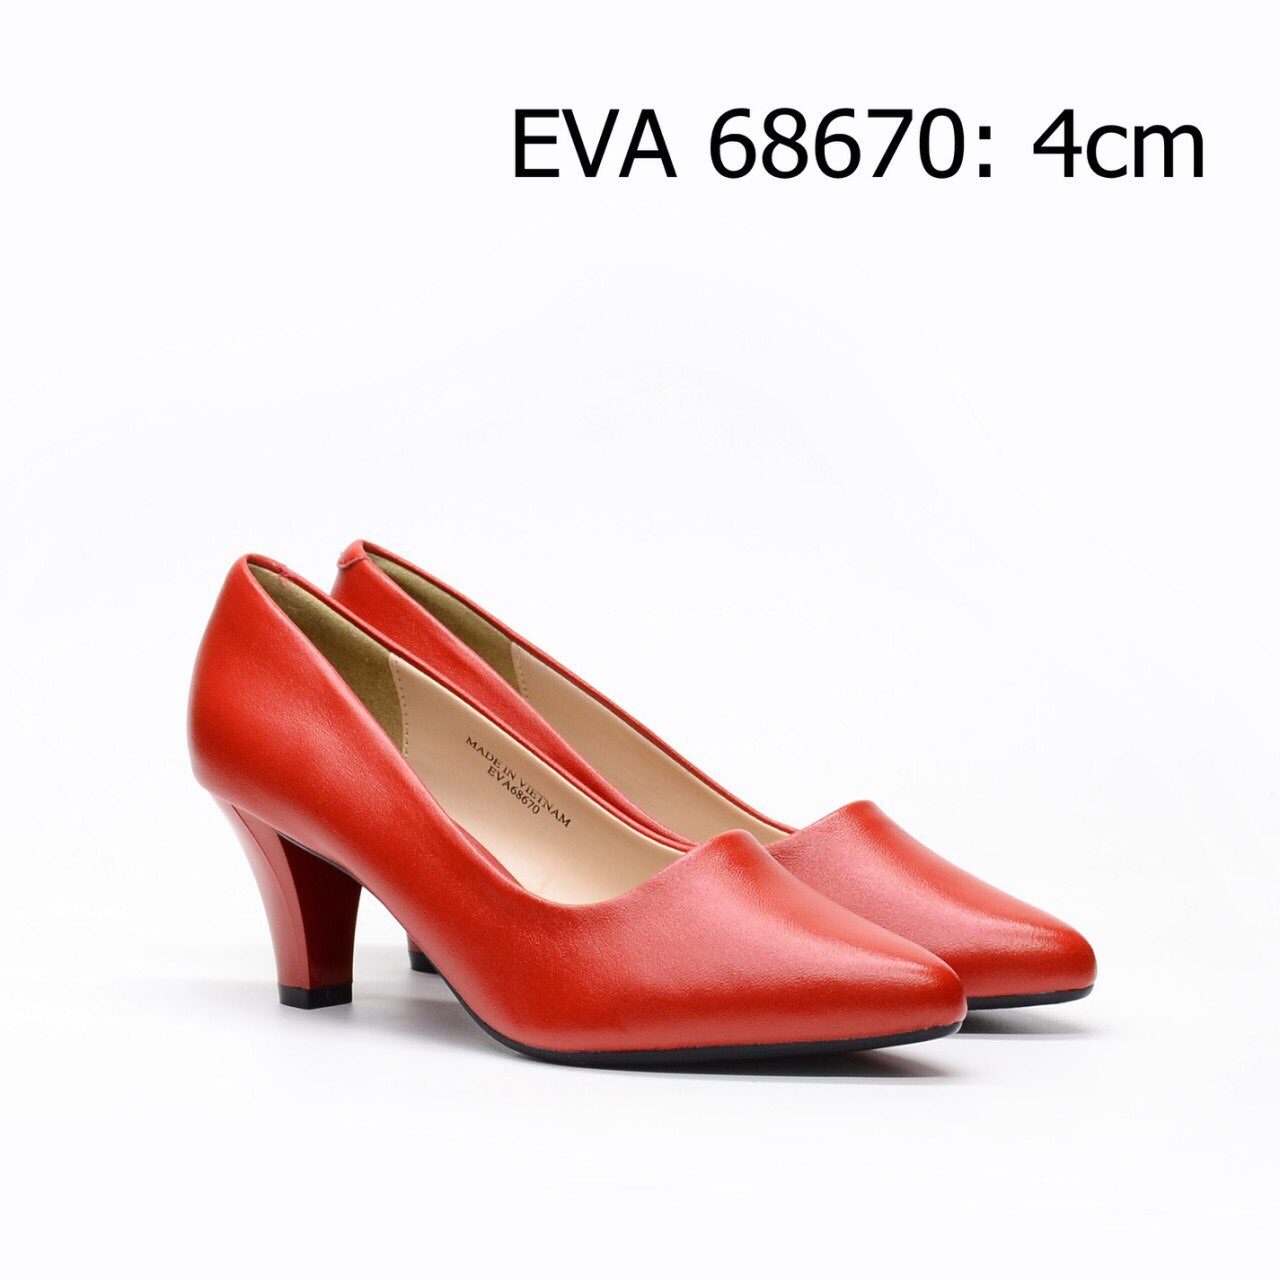 Giày công sở bít mũi EVA68670 thiết kế đơn giản, da mềm đi cực êm